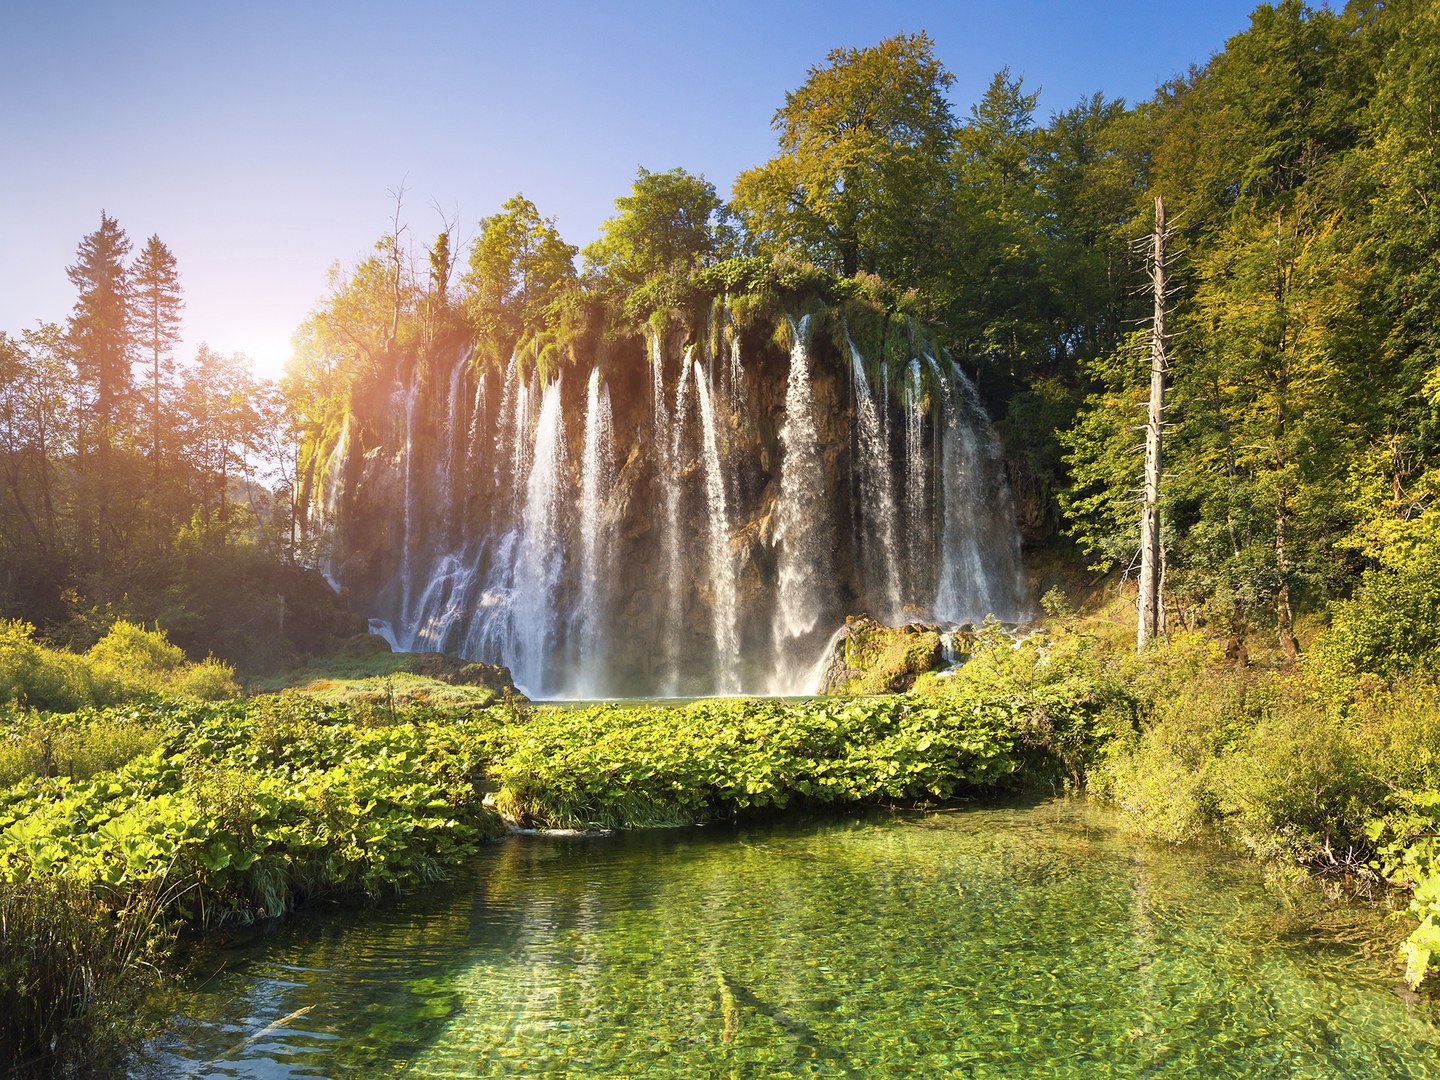 Thác Plitvice nằm trong công viên quốc gia Plitvice ở phía Tây Nam Croatia. Nước ở lòng hồ bao giờ cũng có màu xanh lam, xanh lục vì những loại khoáng chất và vi sinh vật đa dạng sống ở chân núi Dinaric chạy sâu xuống tận đáy hồ